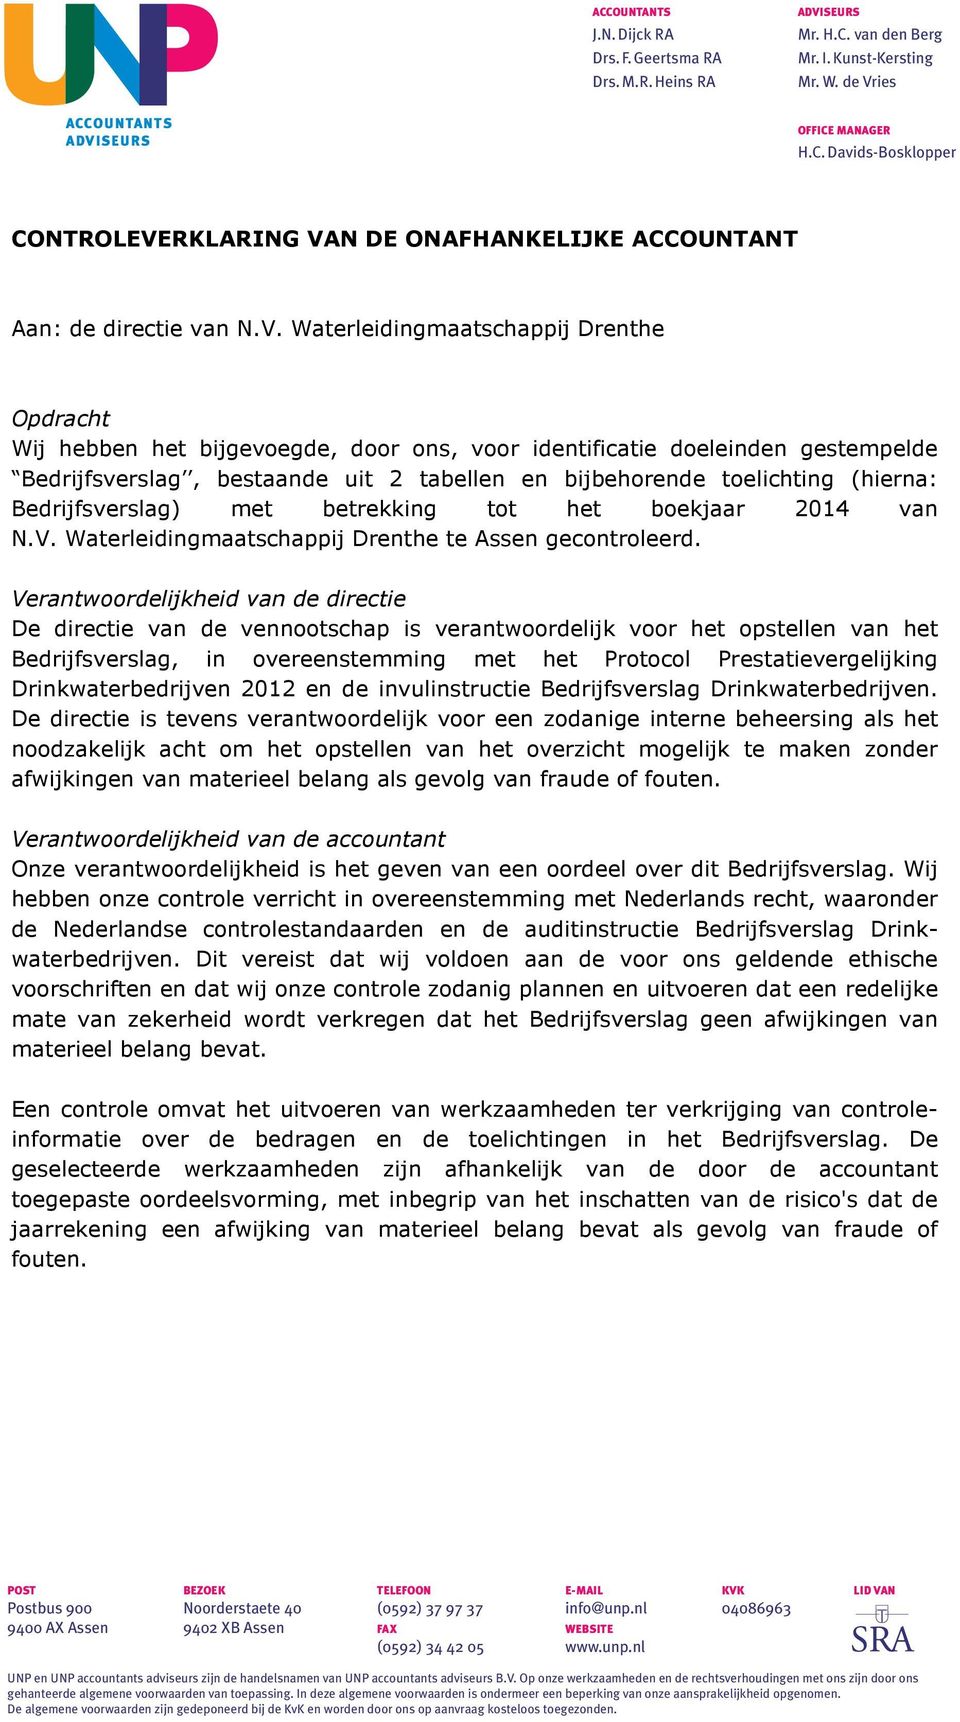 (hierna: Bedrijfsverslag) met betrekking tot het boekjaar 2014 van N.V. Waterleidingmaatschappij Drenthe te Assen gecontroleerd.